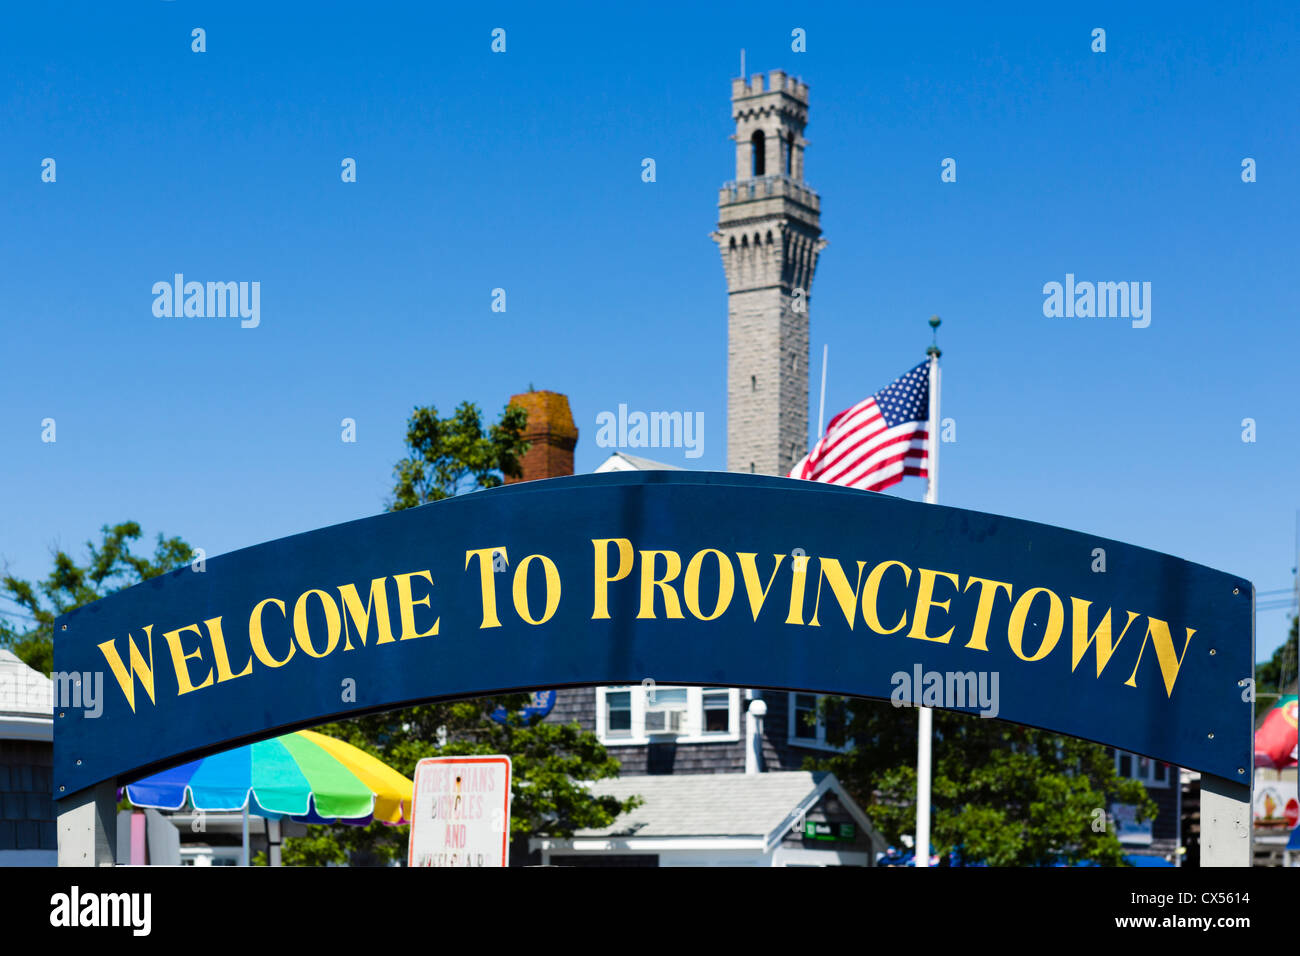 Benvenuti a Provincetown a segno con il monumento del pellegrino torre dietro, a Provincetown, Cape Cod, Massachusetts, STATI UNITI D'AMERICA Foto Stock